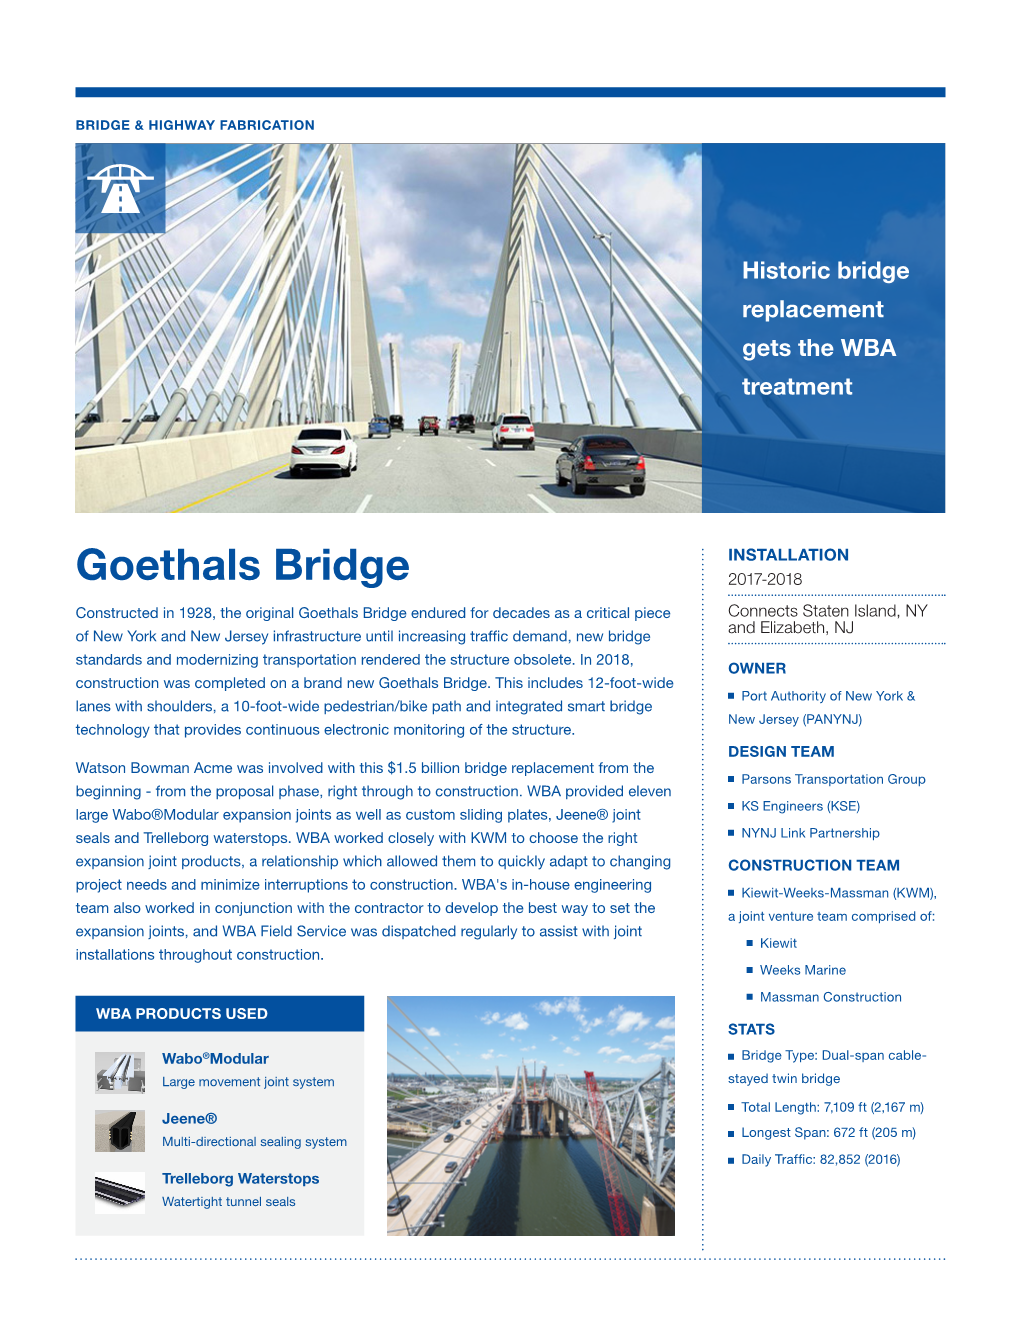 Goethals Bridge 2017-2018